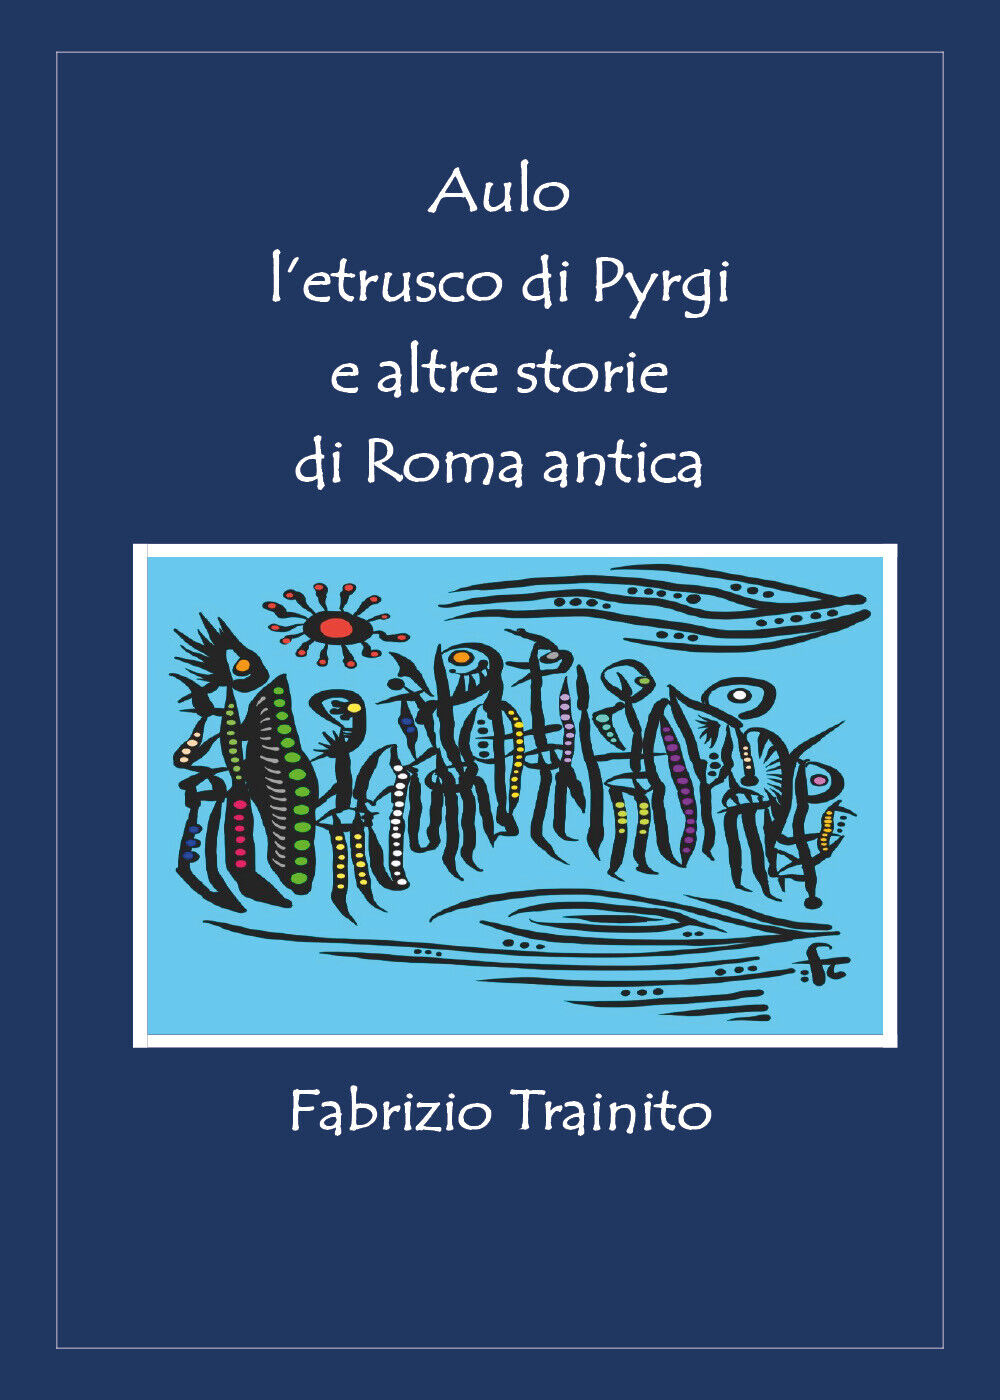 Aulo L'etrusco di Pyrgi e altre storie di Roma antica di Fabrizio Trainito,  202 libro usato